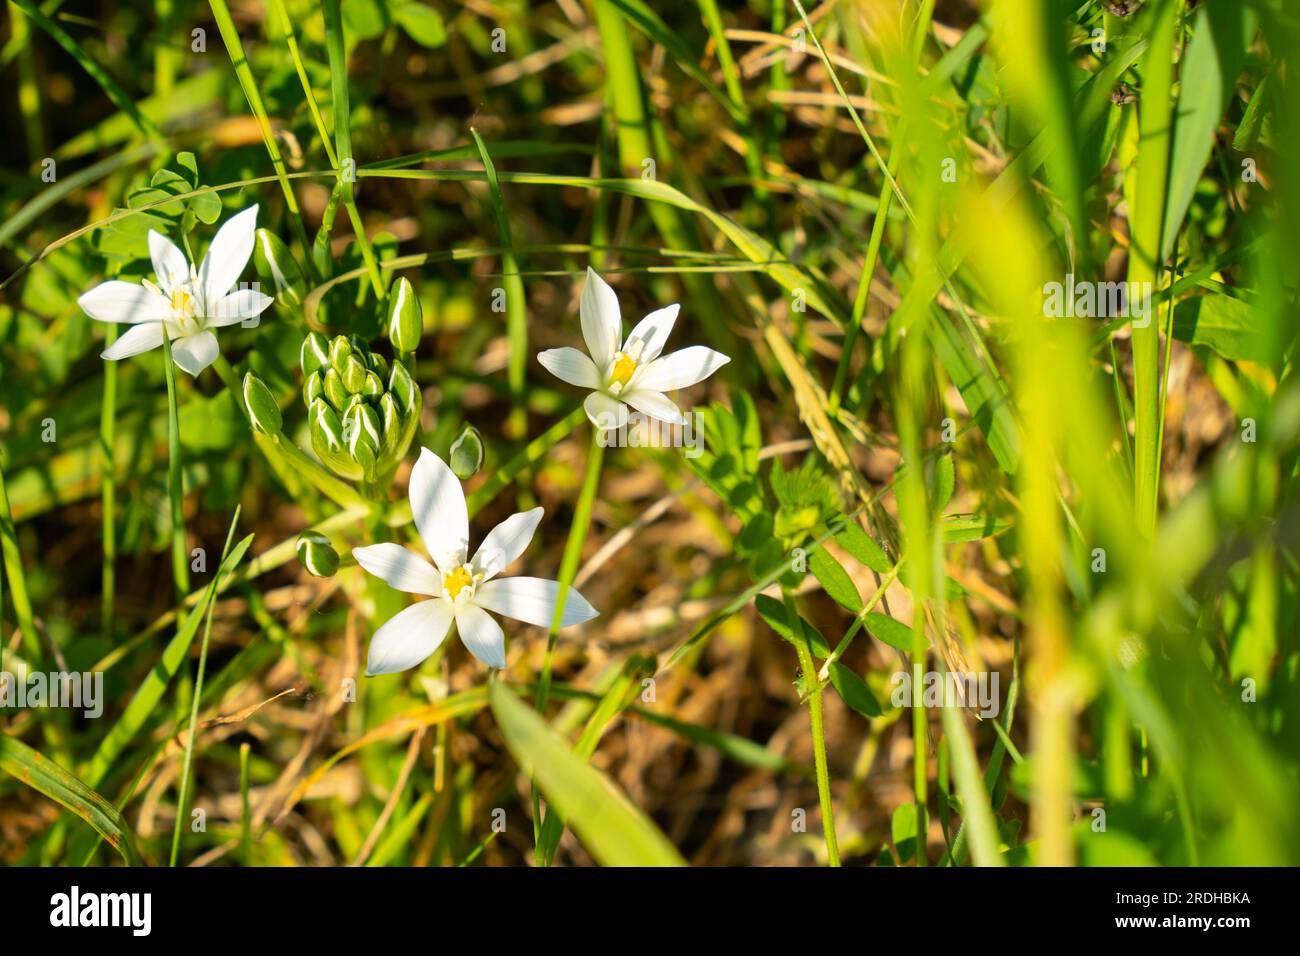 Paraguas en forma de estrella (Ornithogalum umbellatum) con flores blancas escondidas en hierba verde Foto de stock